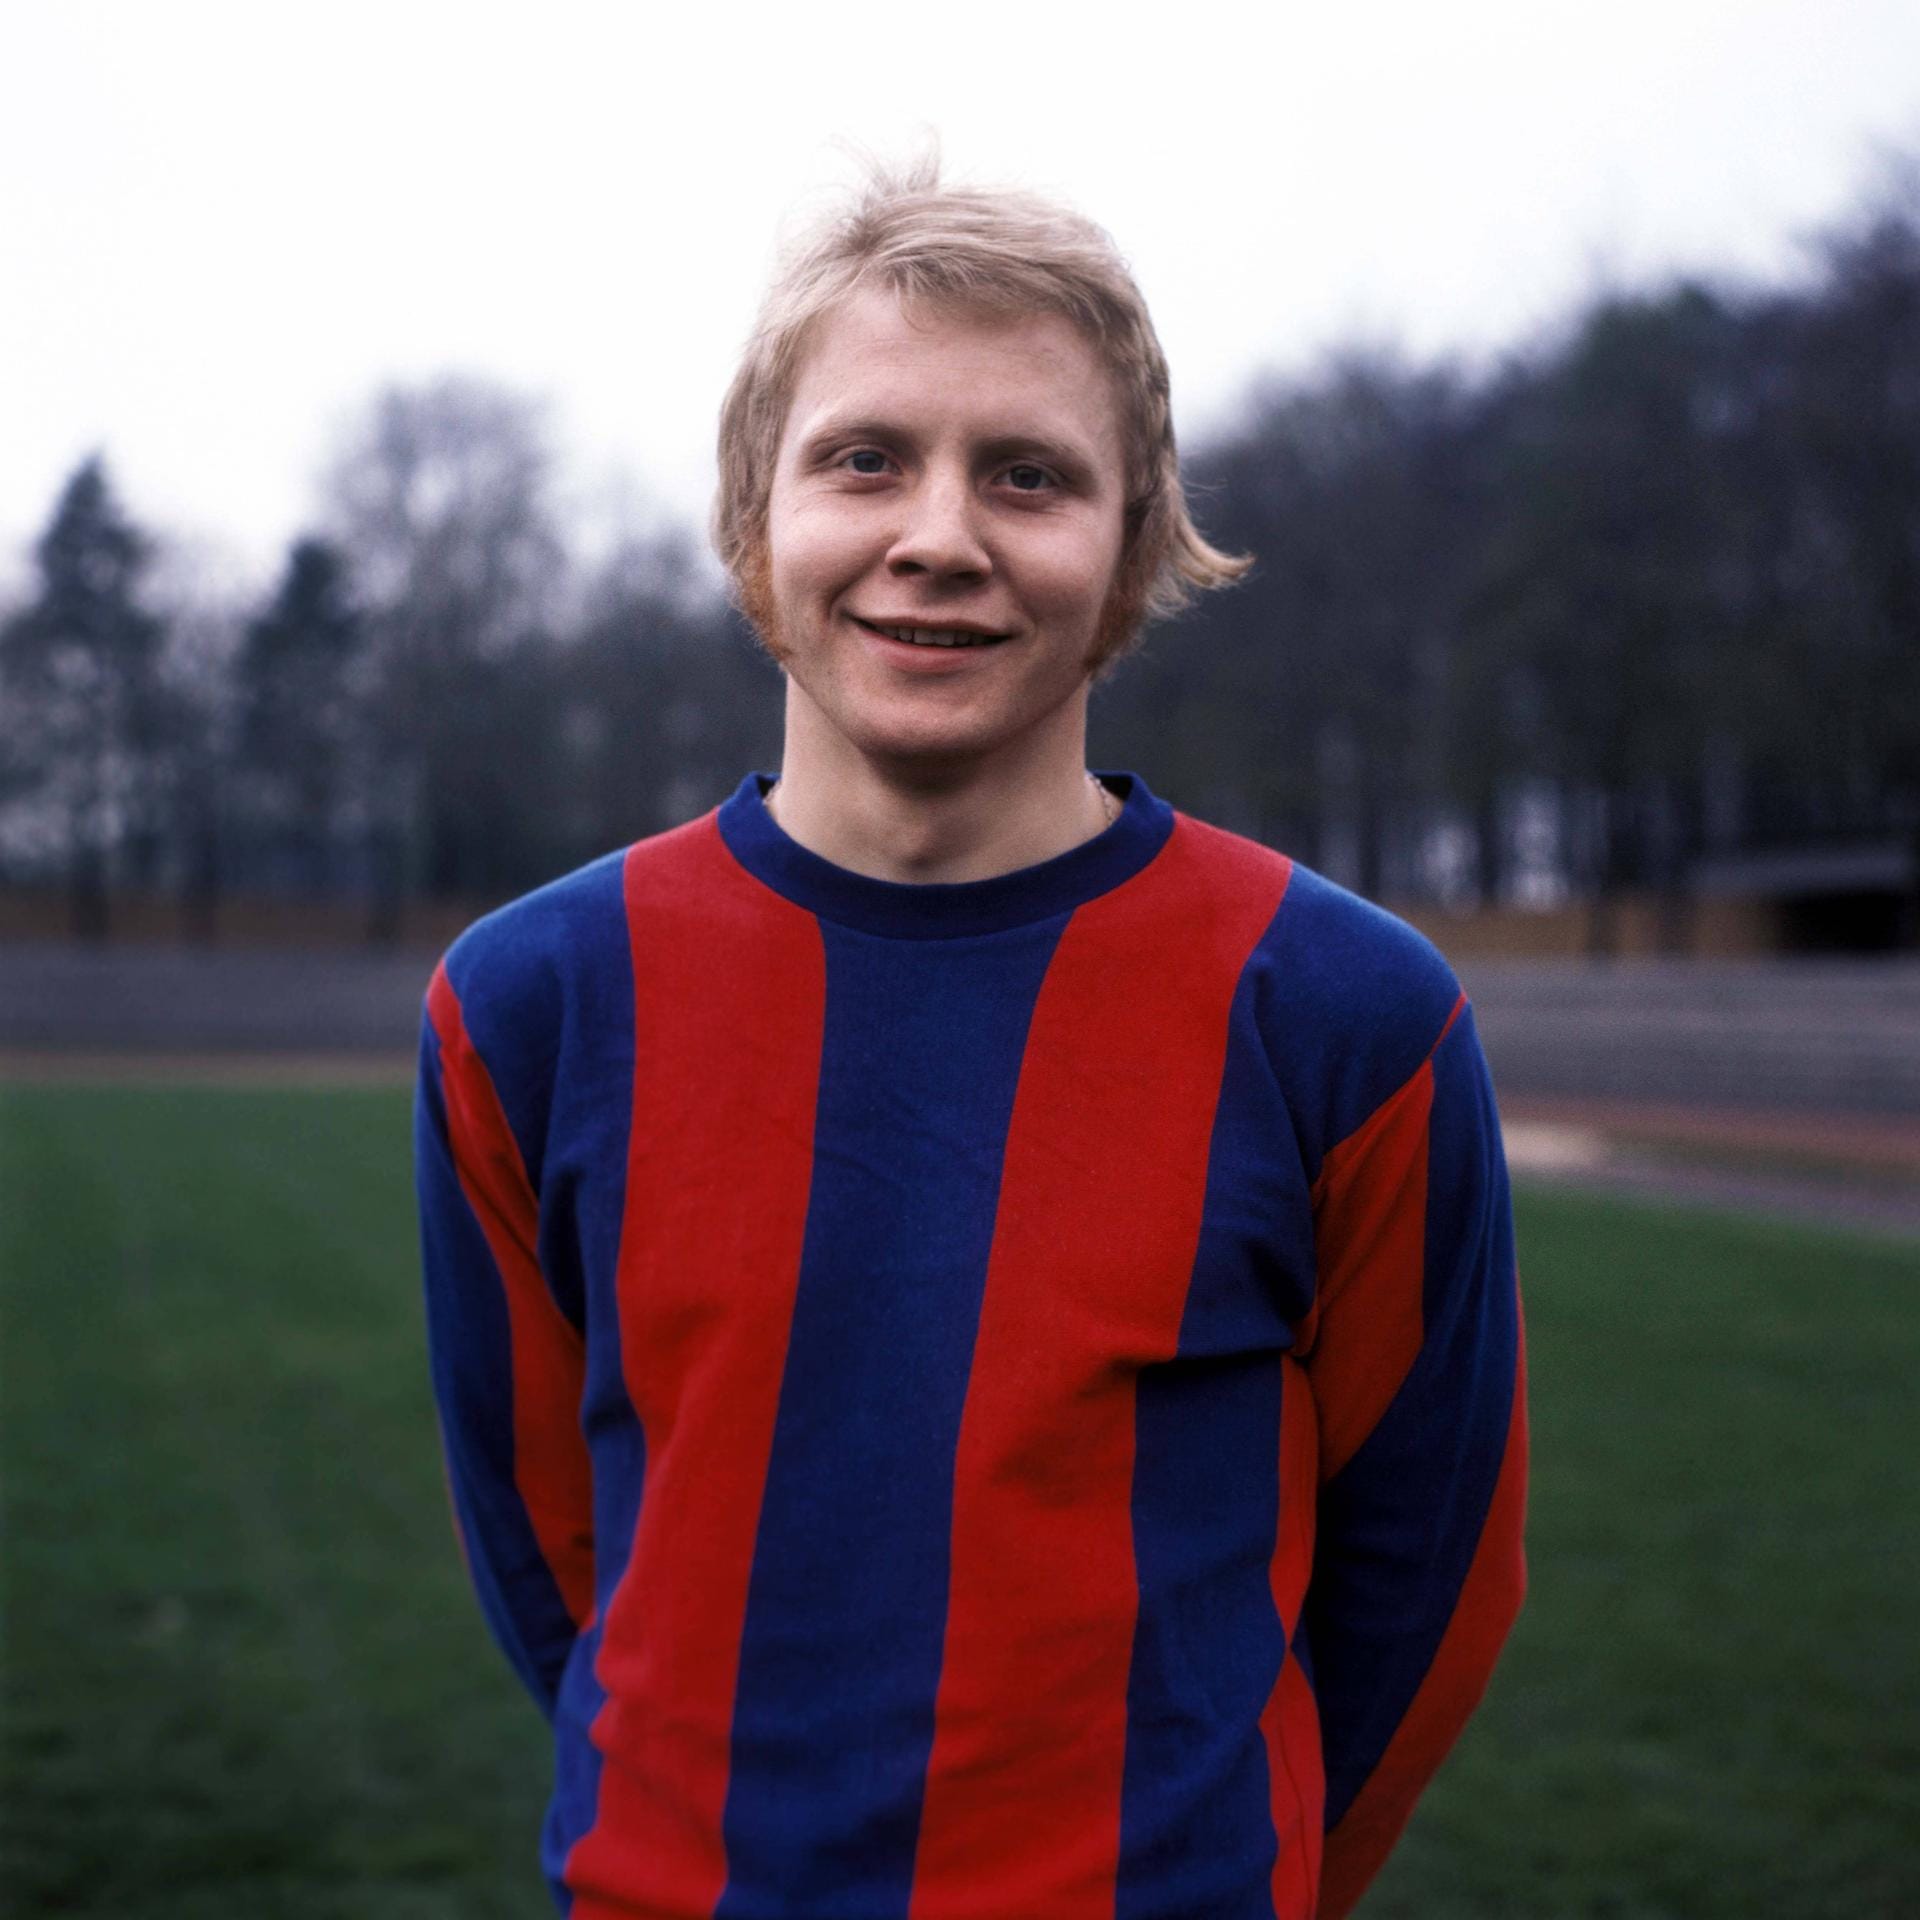 ... Bayer 05 Uerdingen ging. Bis 1974 erzielte er dort 80 Tore in 101 Spielen. Danach ging es...